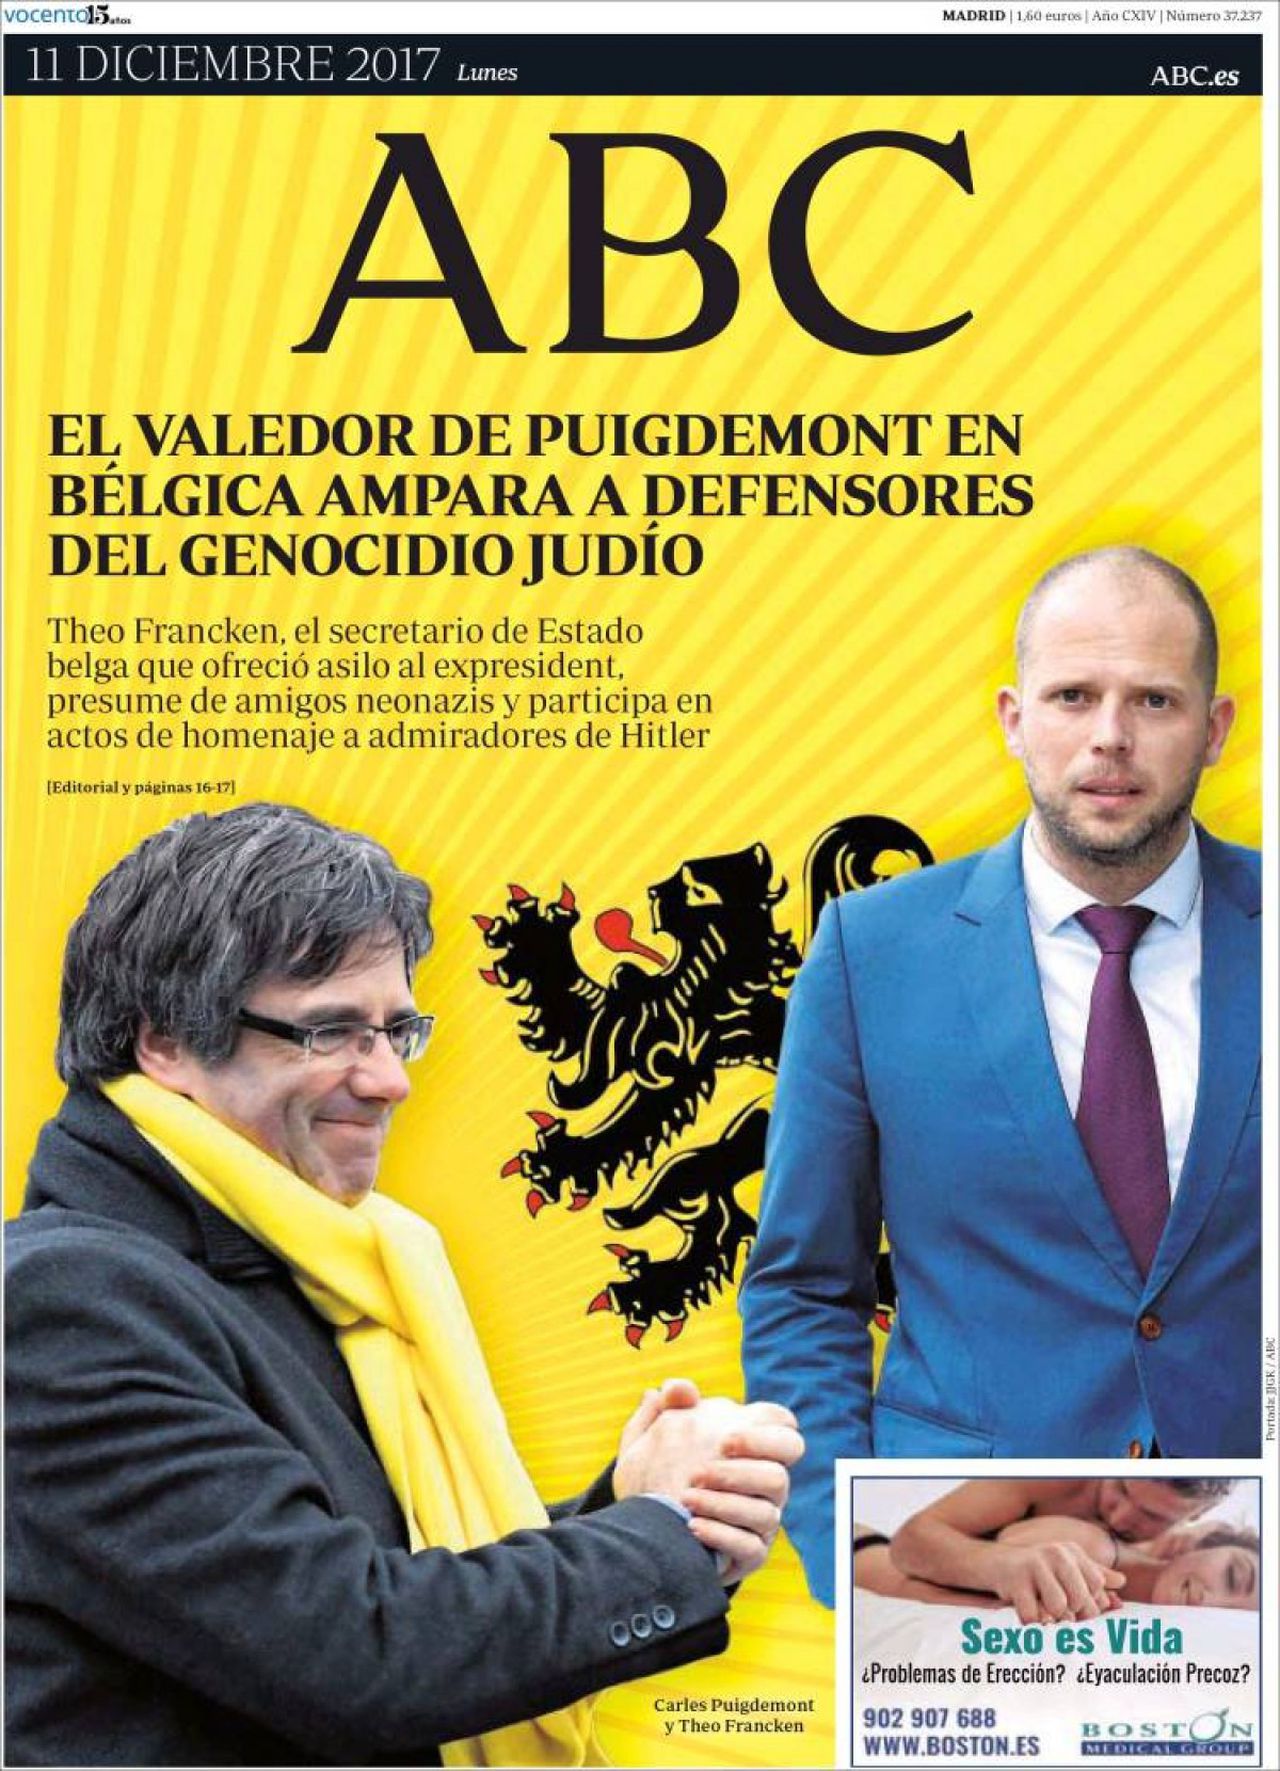 La TV flamenca denuncia la oleada anti-belga española: "¡A por los belgas"!